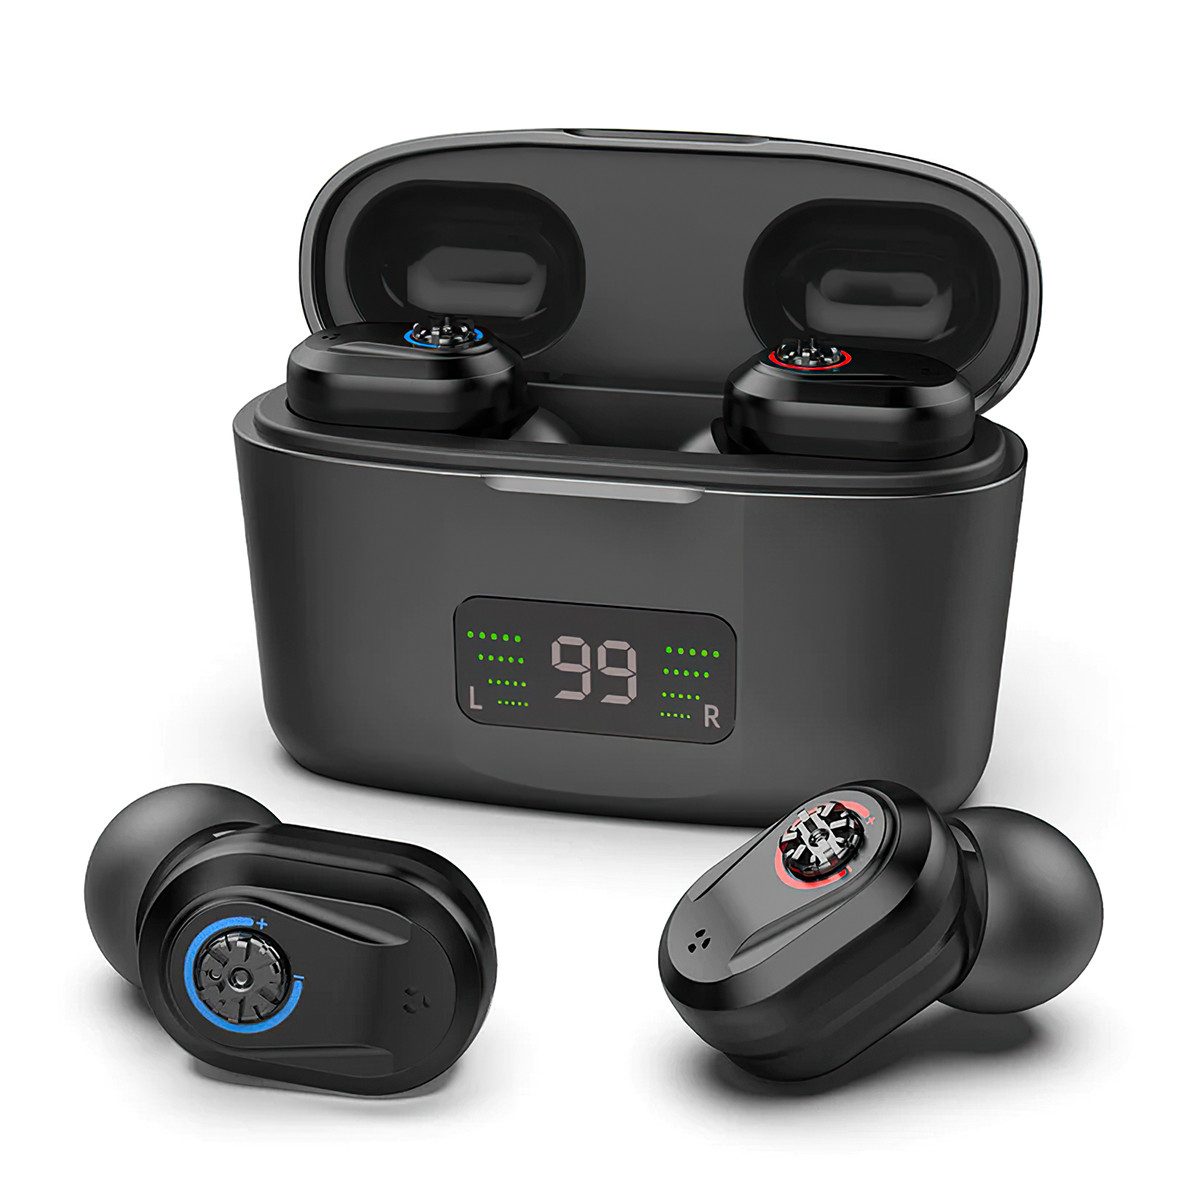 Novzep Hörverstärker Wiederaufladbare Hörgeräte mit hochauflösender Digitalanzeige, Hörgeräte mit Ladeetui, Rauschunterdrückung, einstellbare Lautstärke